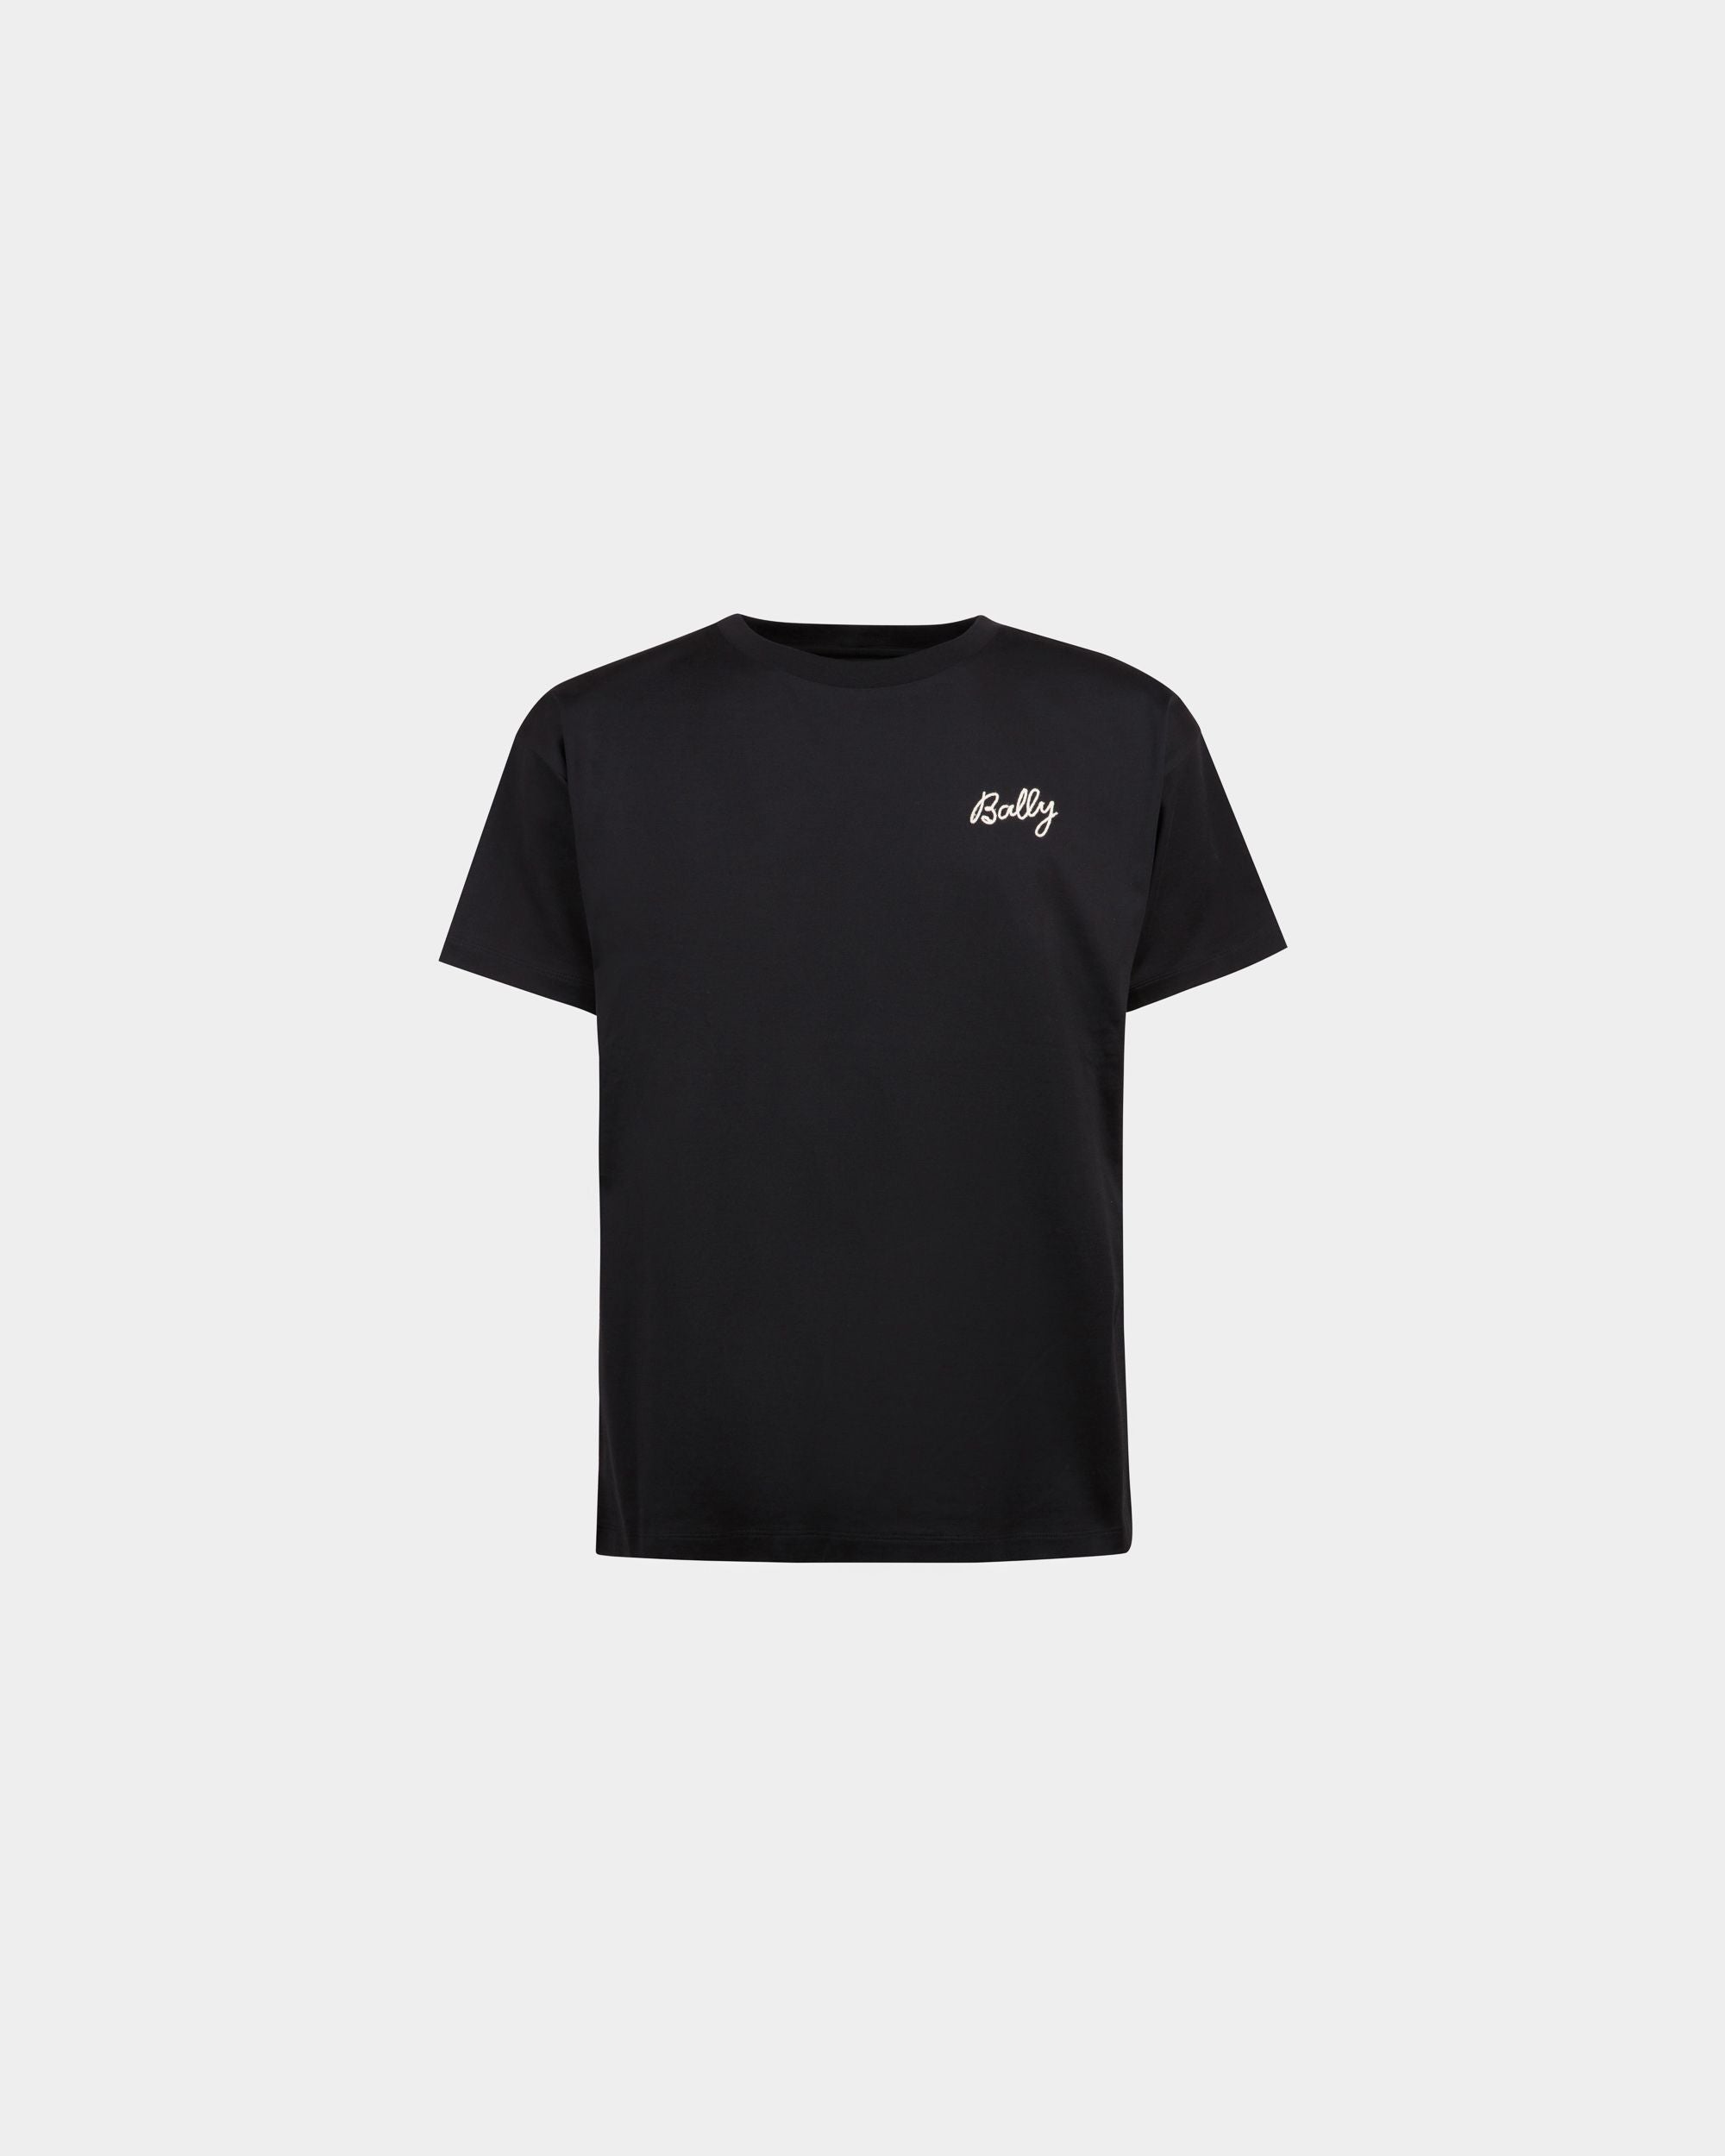 T-shirt da uomo in cotone nero | Bally | Still Life Fronte